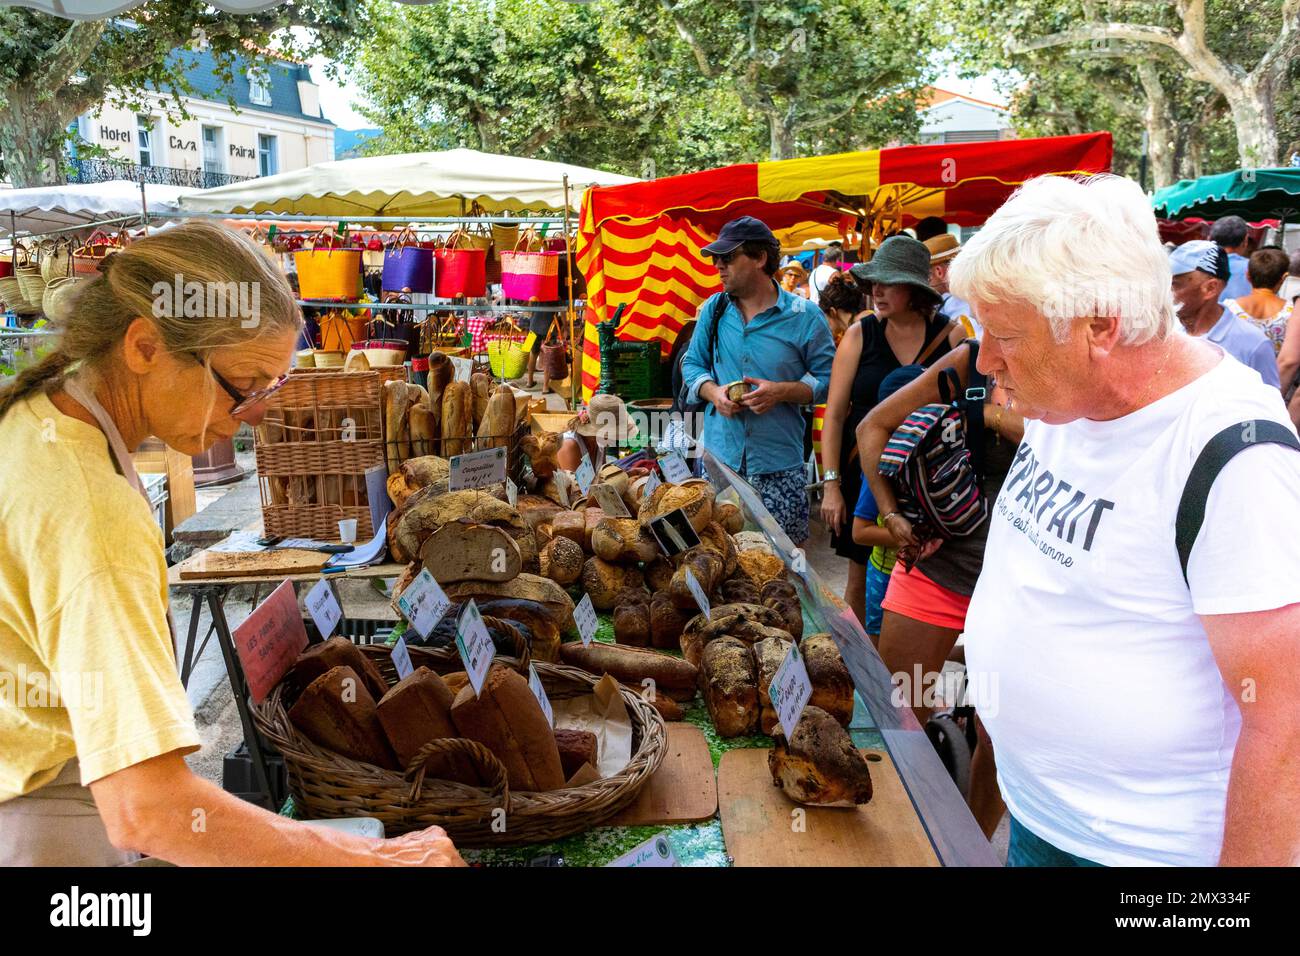 Collioure, France, (région de Perpignan), grande foule de gens, Shoppers Shopping at Outdoor French Market, Bakery Shop, pain, Street Scenes Banque D'Images